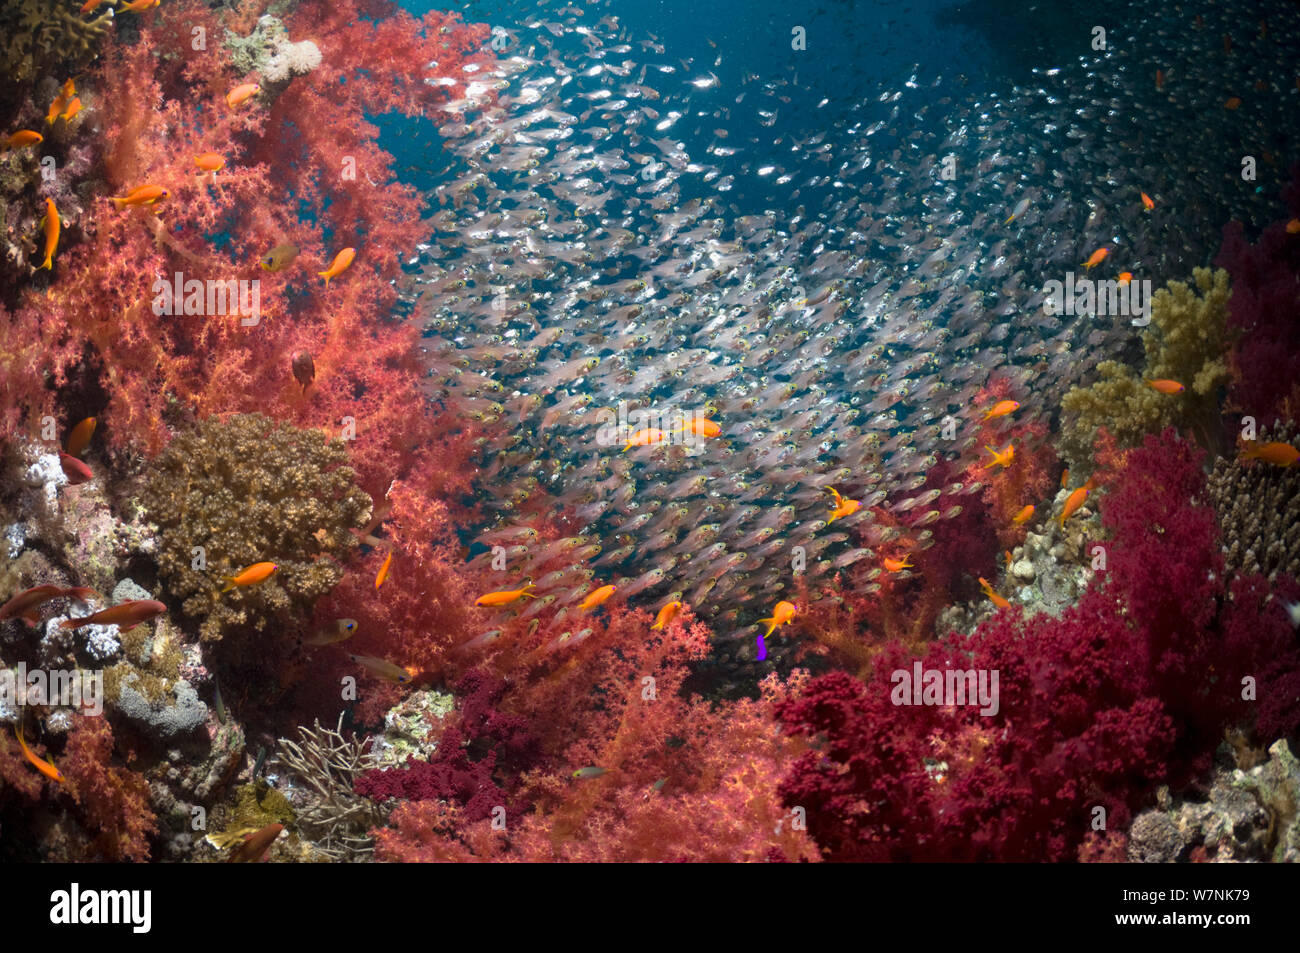 Coral reef paesaggi con coralli molli (Dendronephthya sp) e fitta secca delle spazzatrici pigmeo (Parapriacanthus guentheri). Egitto, Mar Rosso. Foto Stock